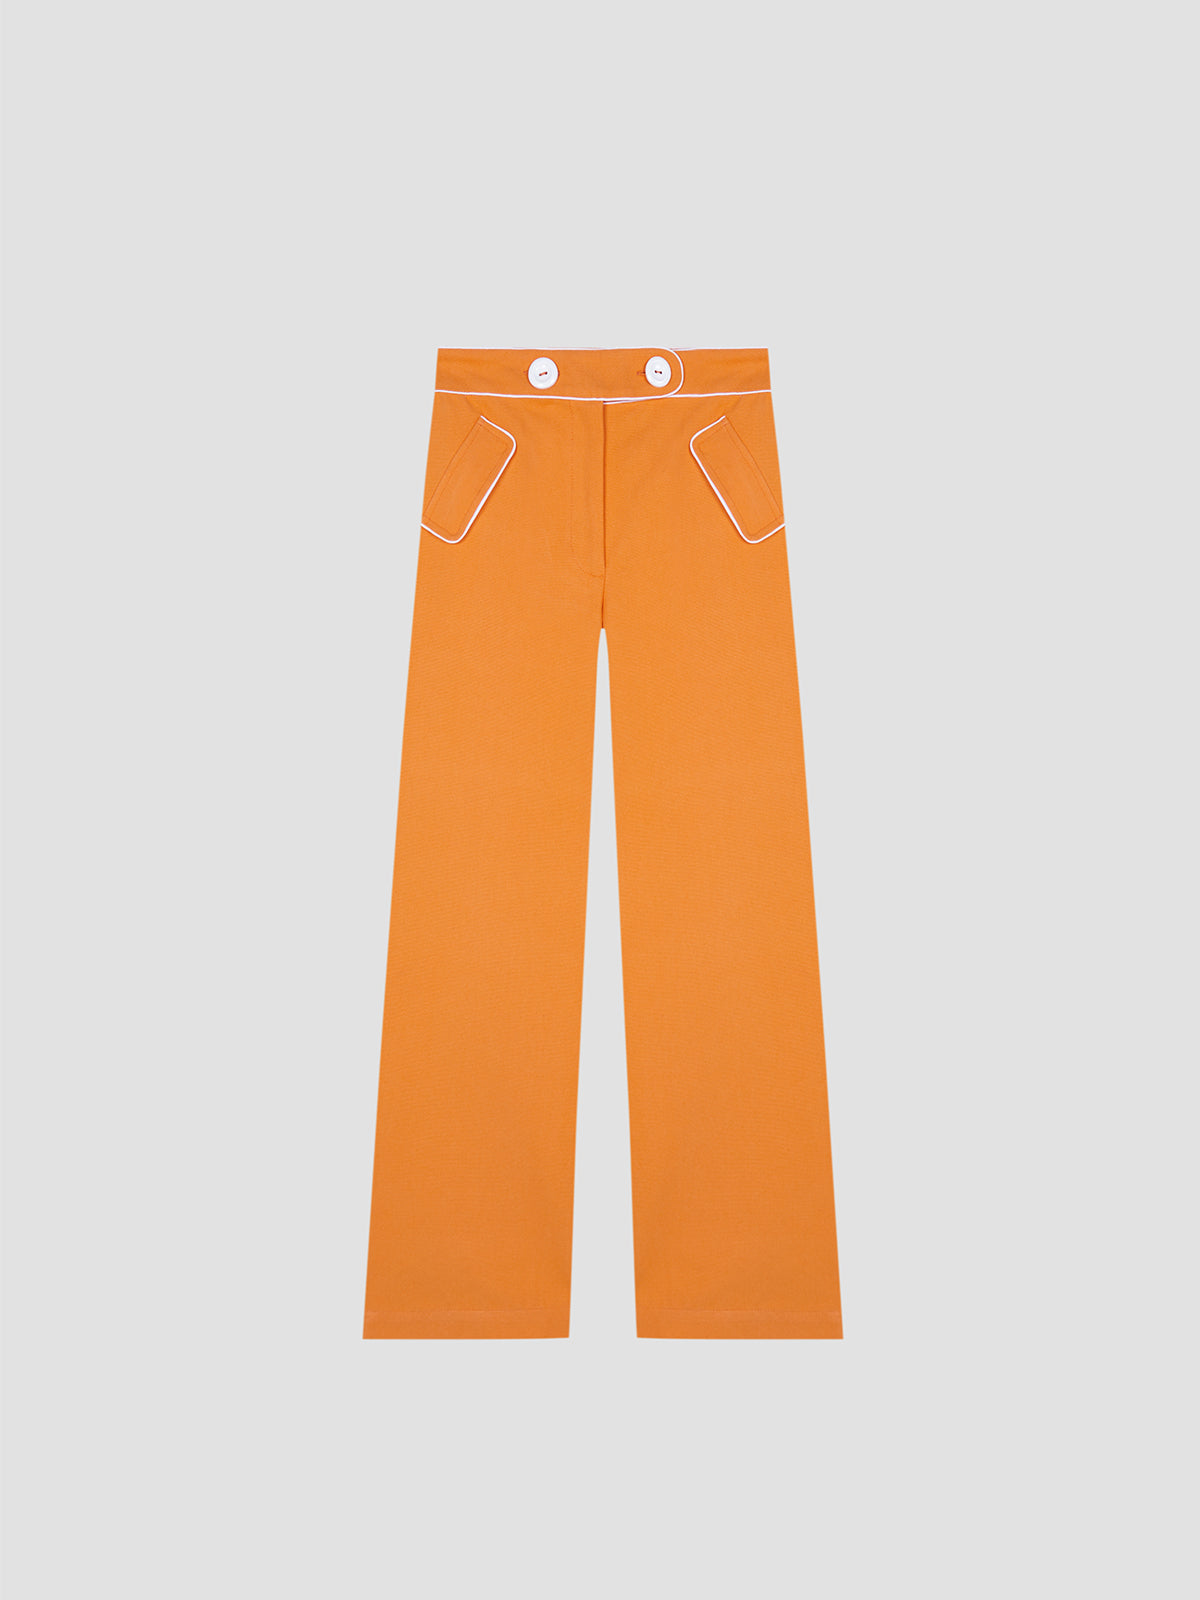 Orange pique trousers with medium rise.